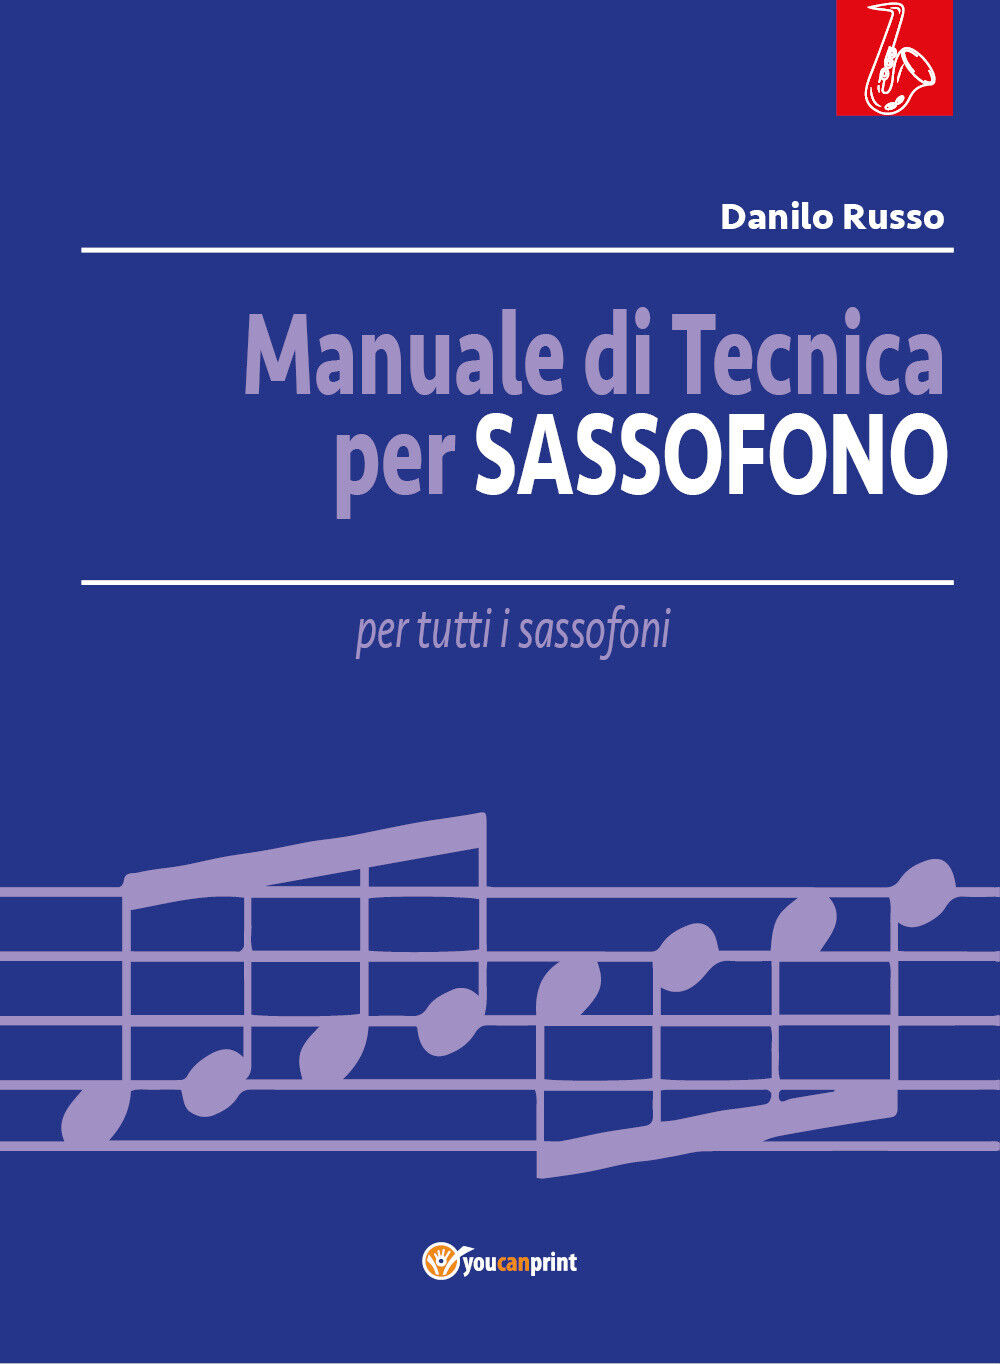 Manuale di tecnica per sassofono di Danilo Russo, 2019, Youcanprint